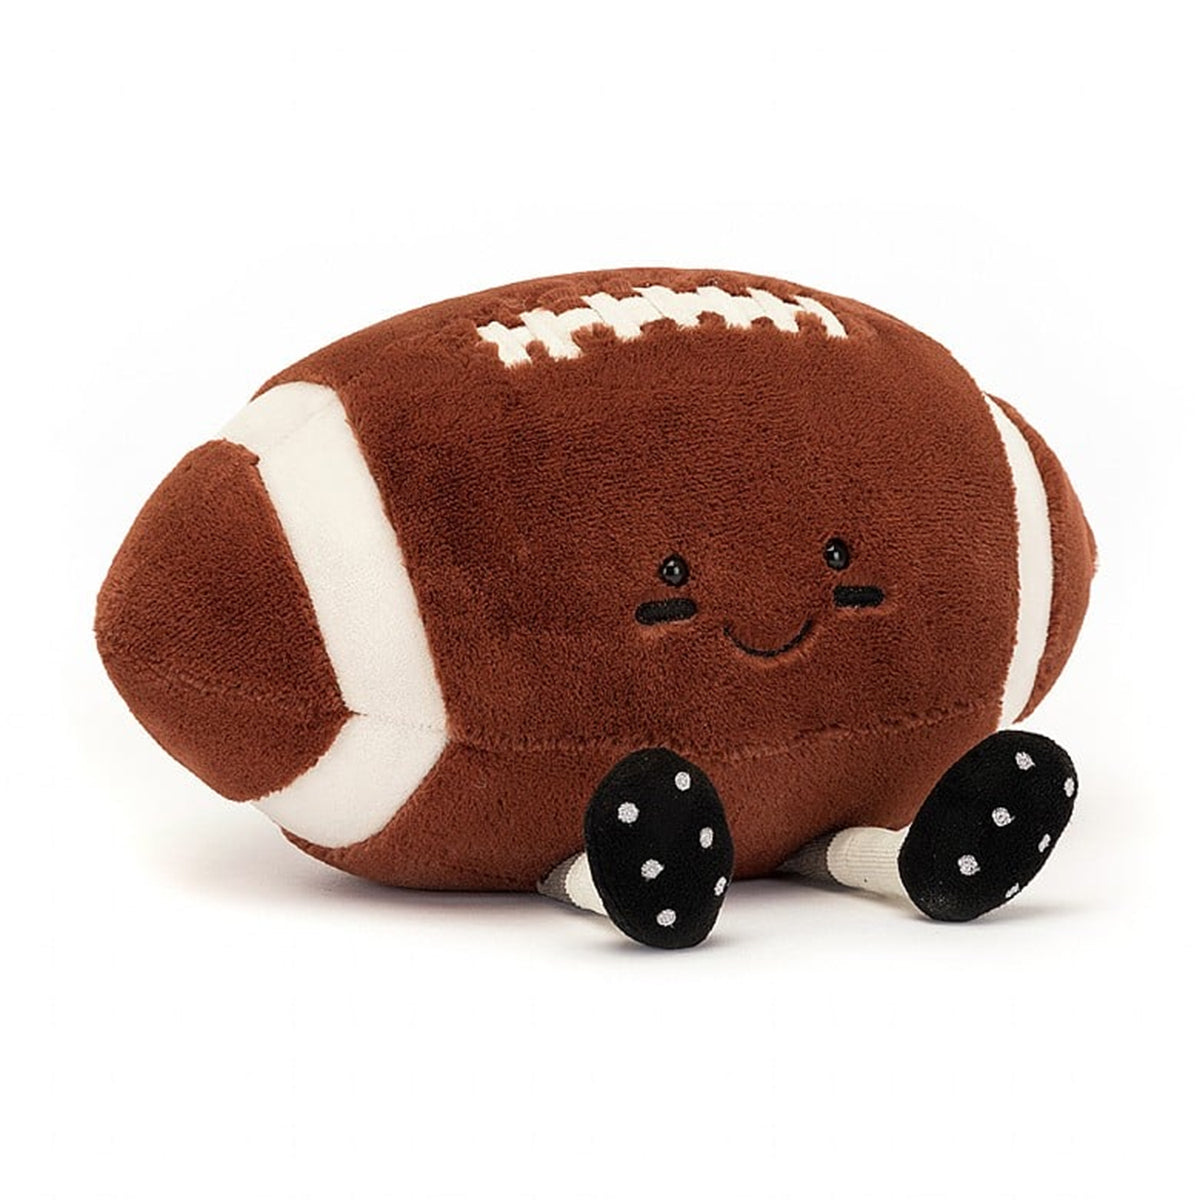 Jellycat Amuseable Stuffed Football Plush Toy